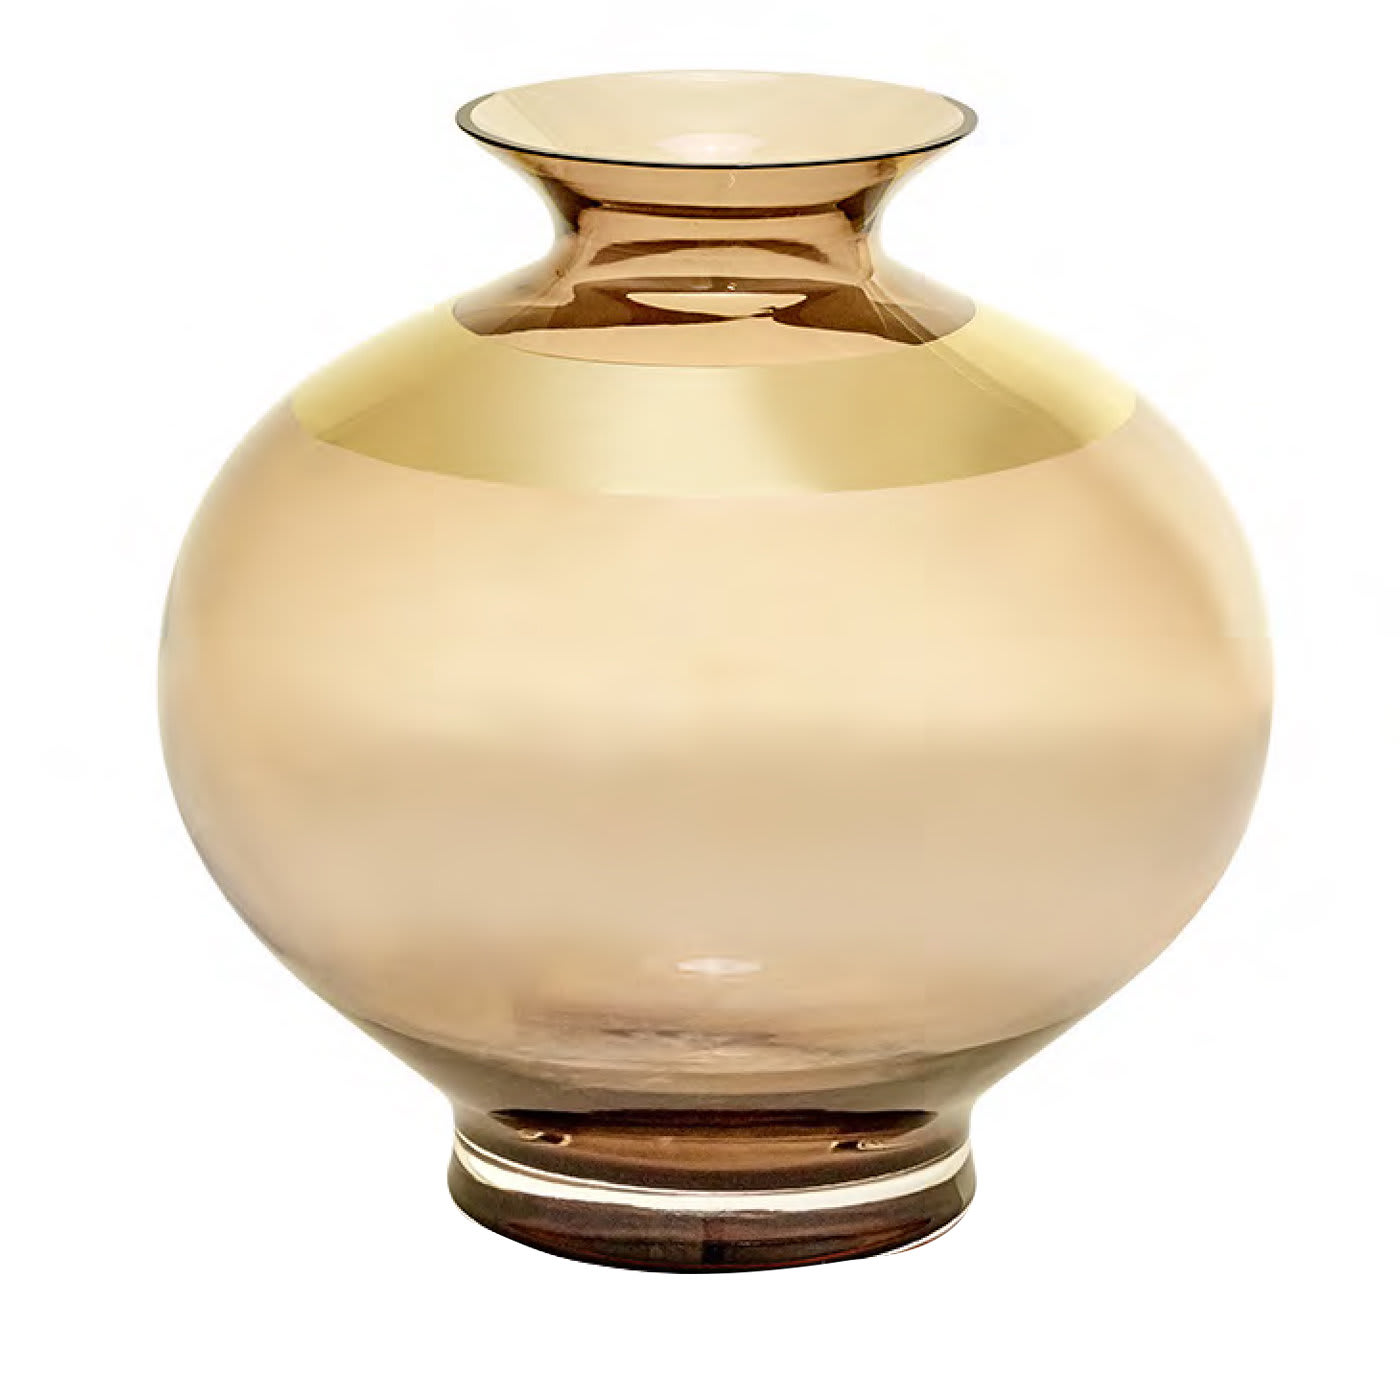 Saffo Small Matt Amphora - Pure 24k Gold - Mara Dal Cin for DFN